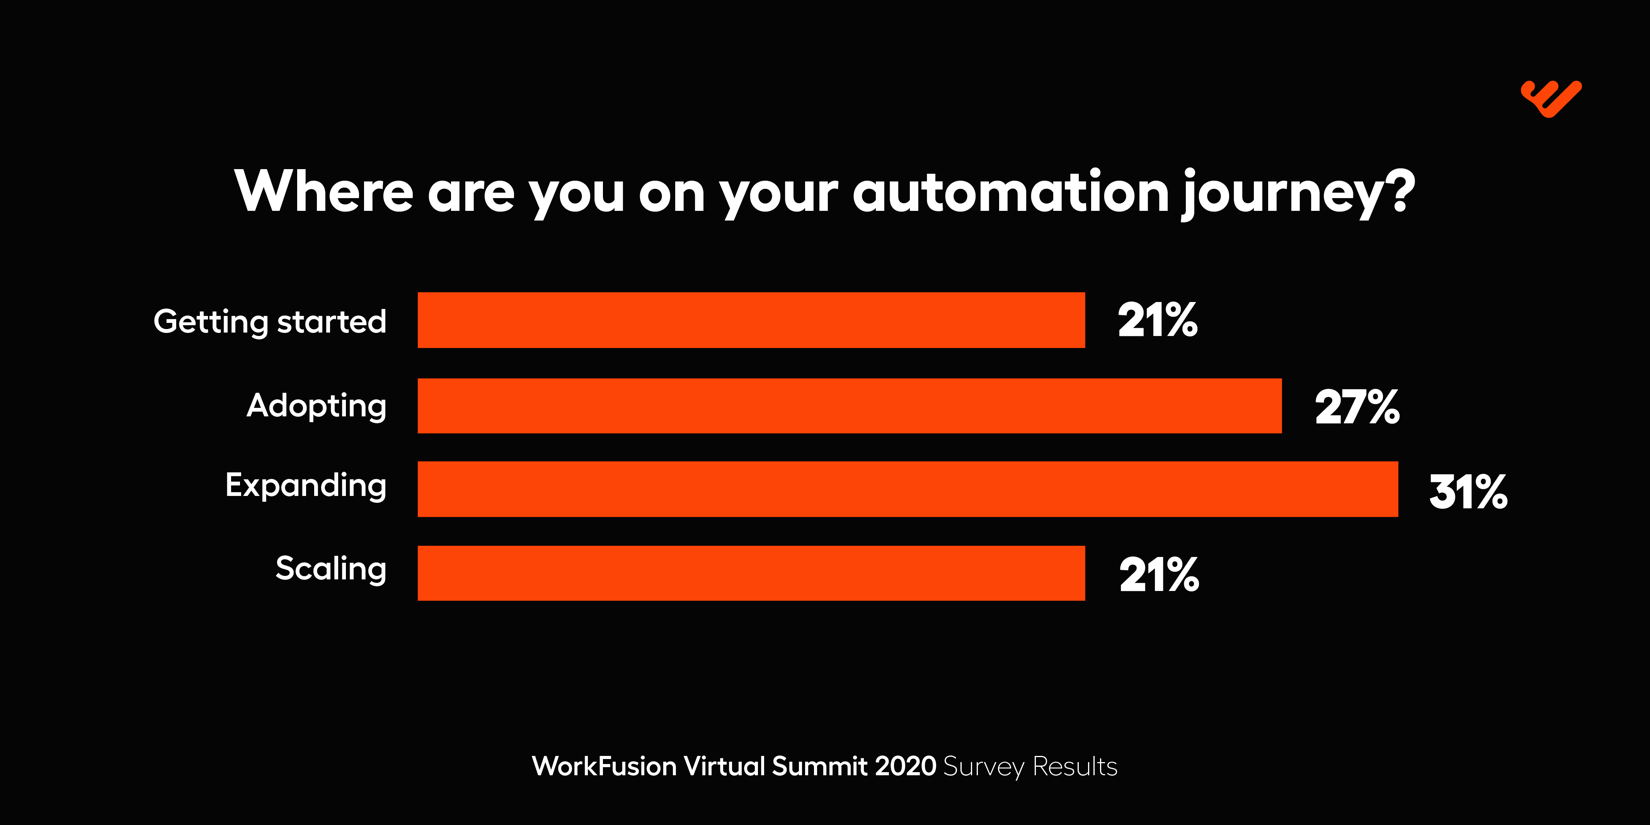 WorkFusion Virtual Summit automaion journey